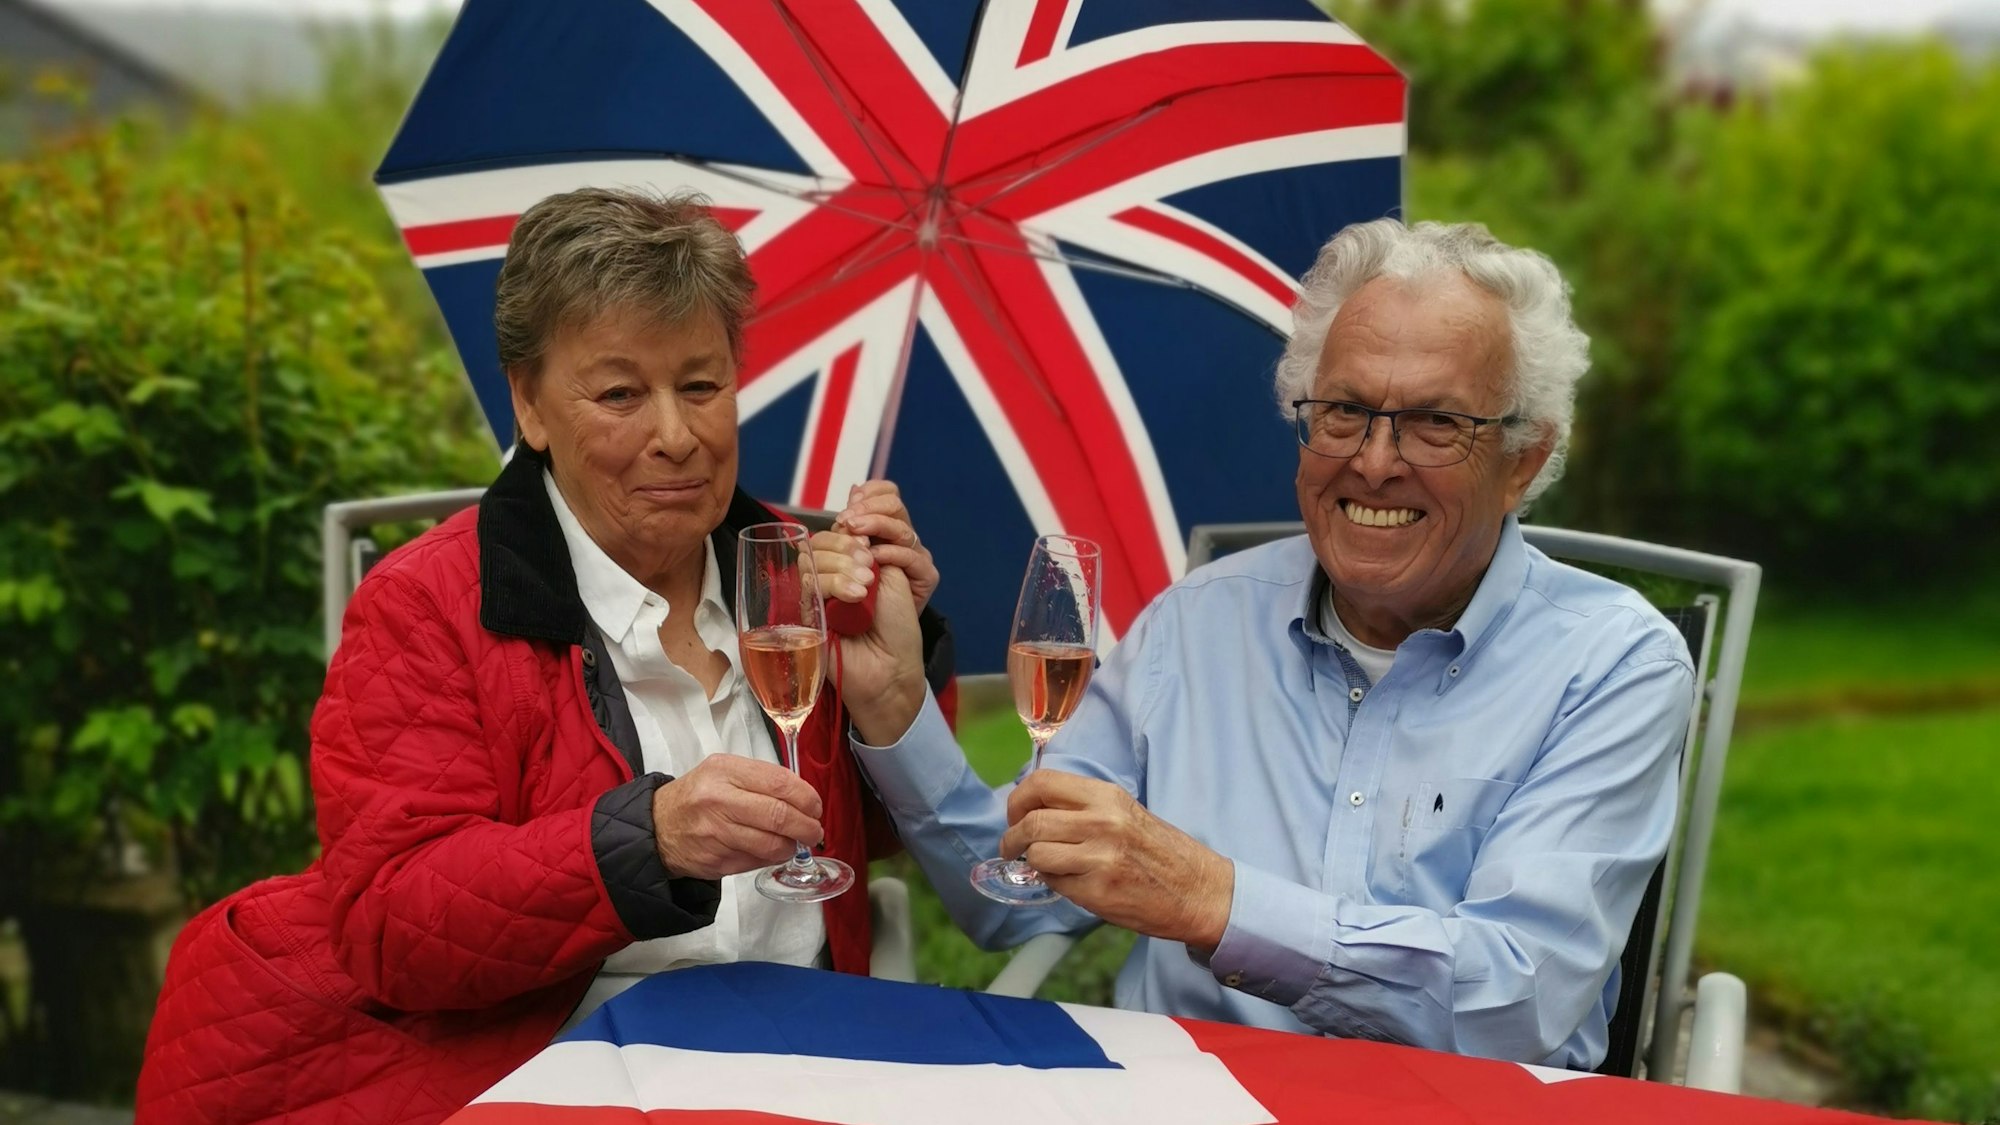 Angie und Erich Marschall mit dem Union Jack und einem Glas Sekt auf die Krönung.